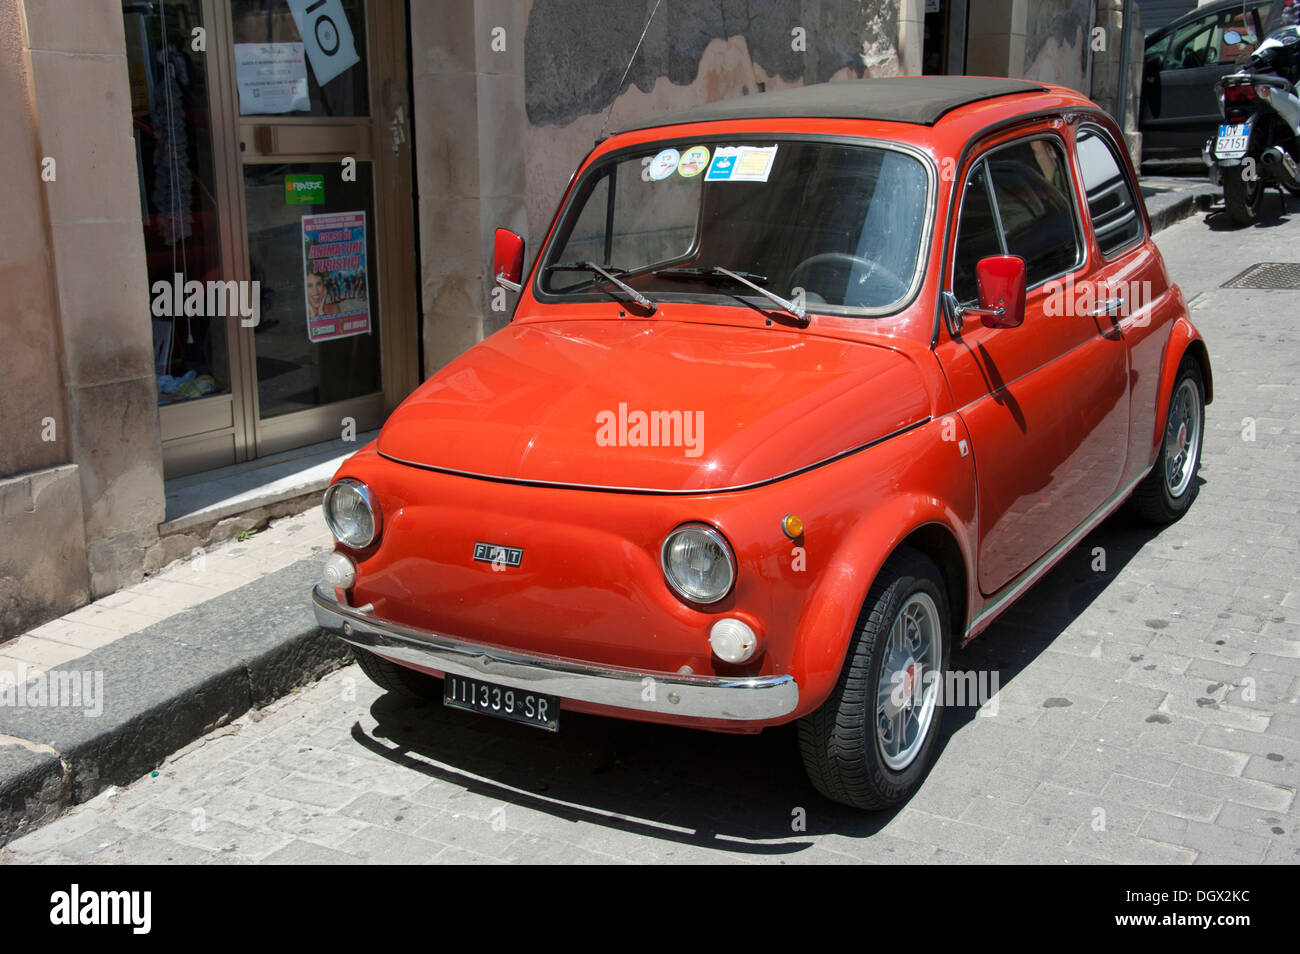 Car, Fiat Bambino, Noto, province of Syracuse, Sicily, Italy, Europe Stock Photo